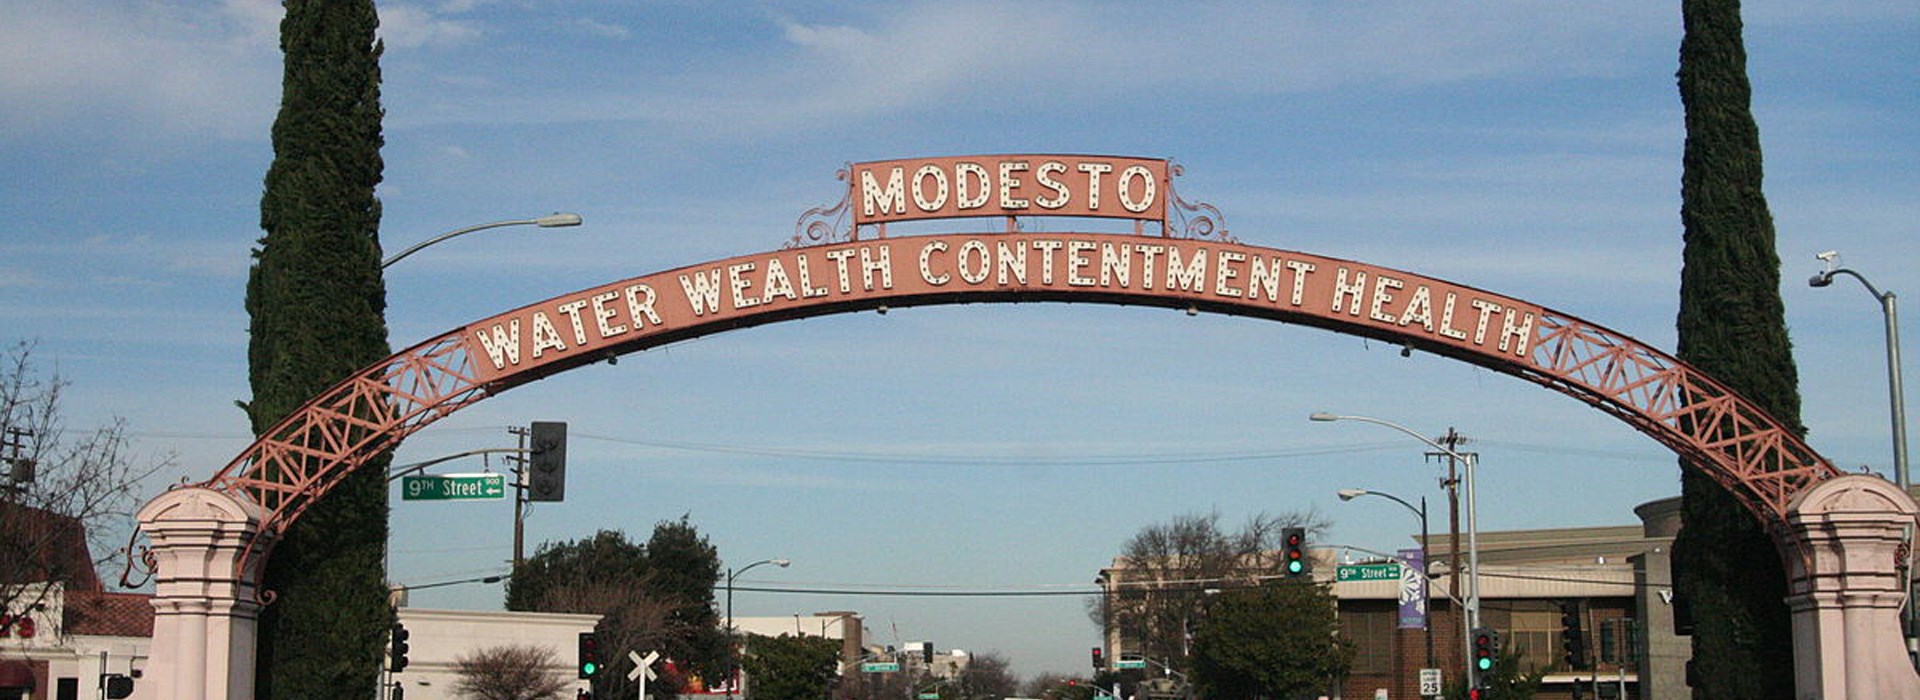 Visiter Modesto - Etats-Unis